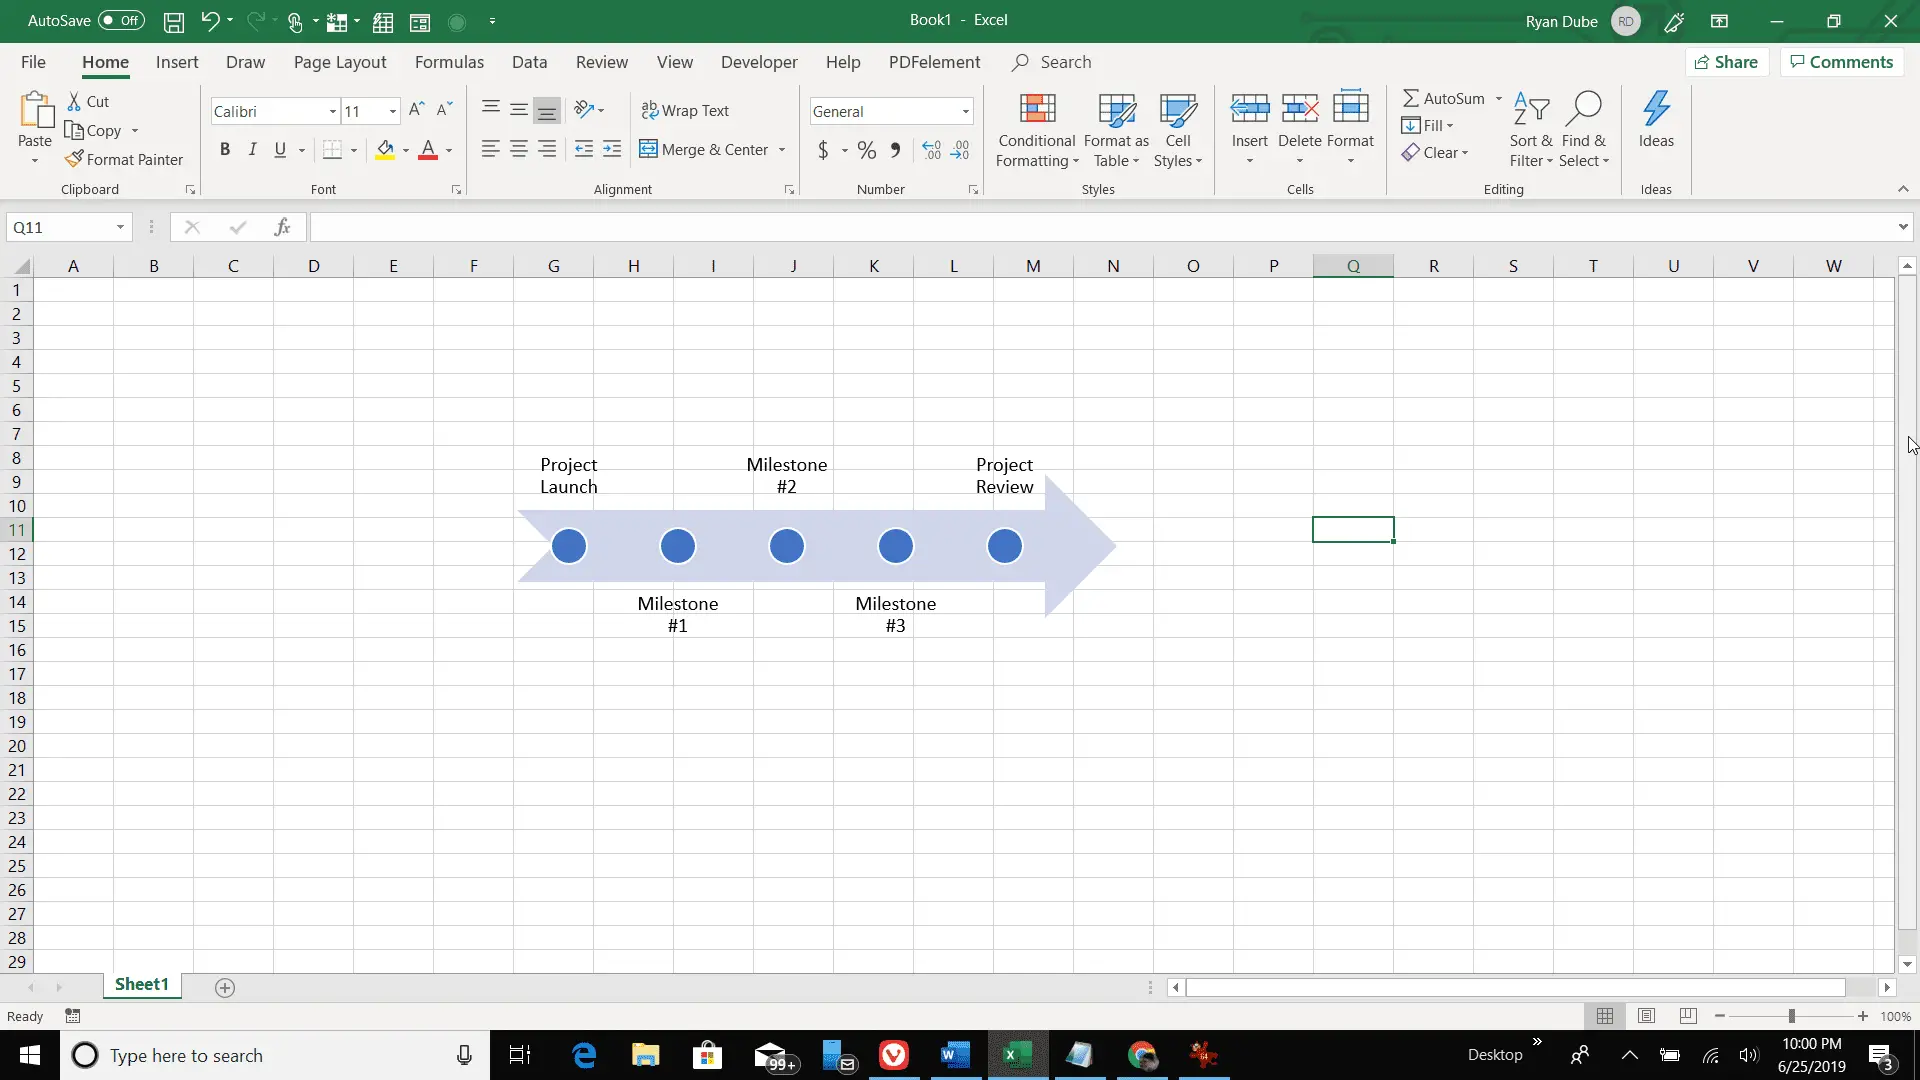 Captura de tela de uma linha do tempo do Excel em uma planilha do Excel